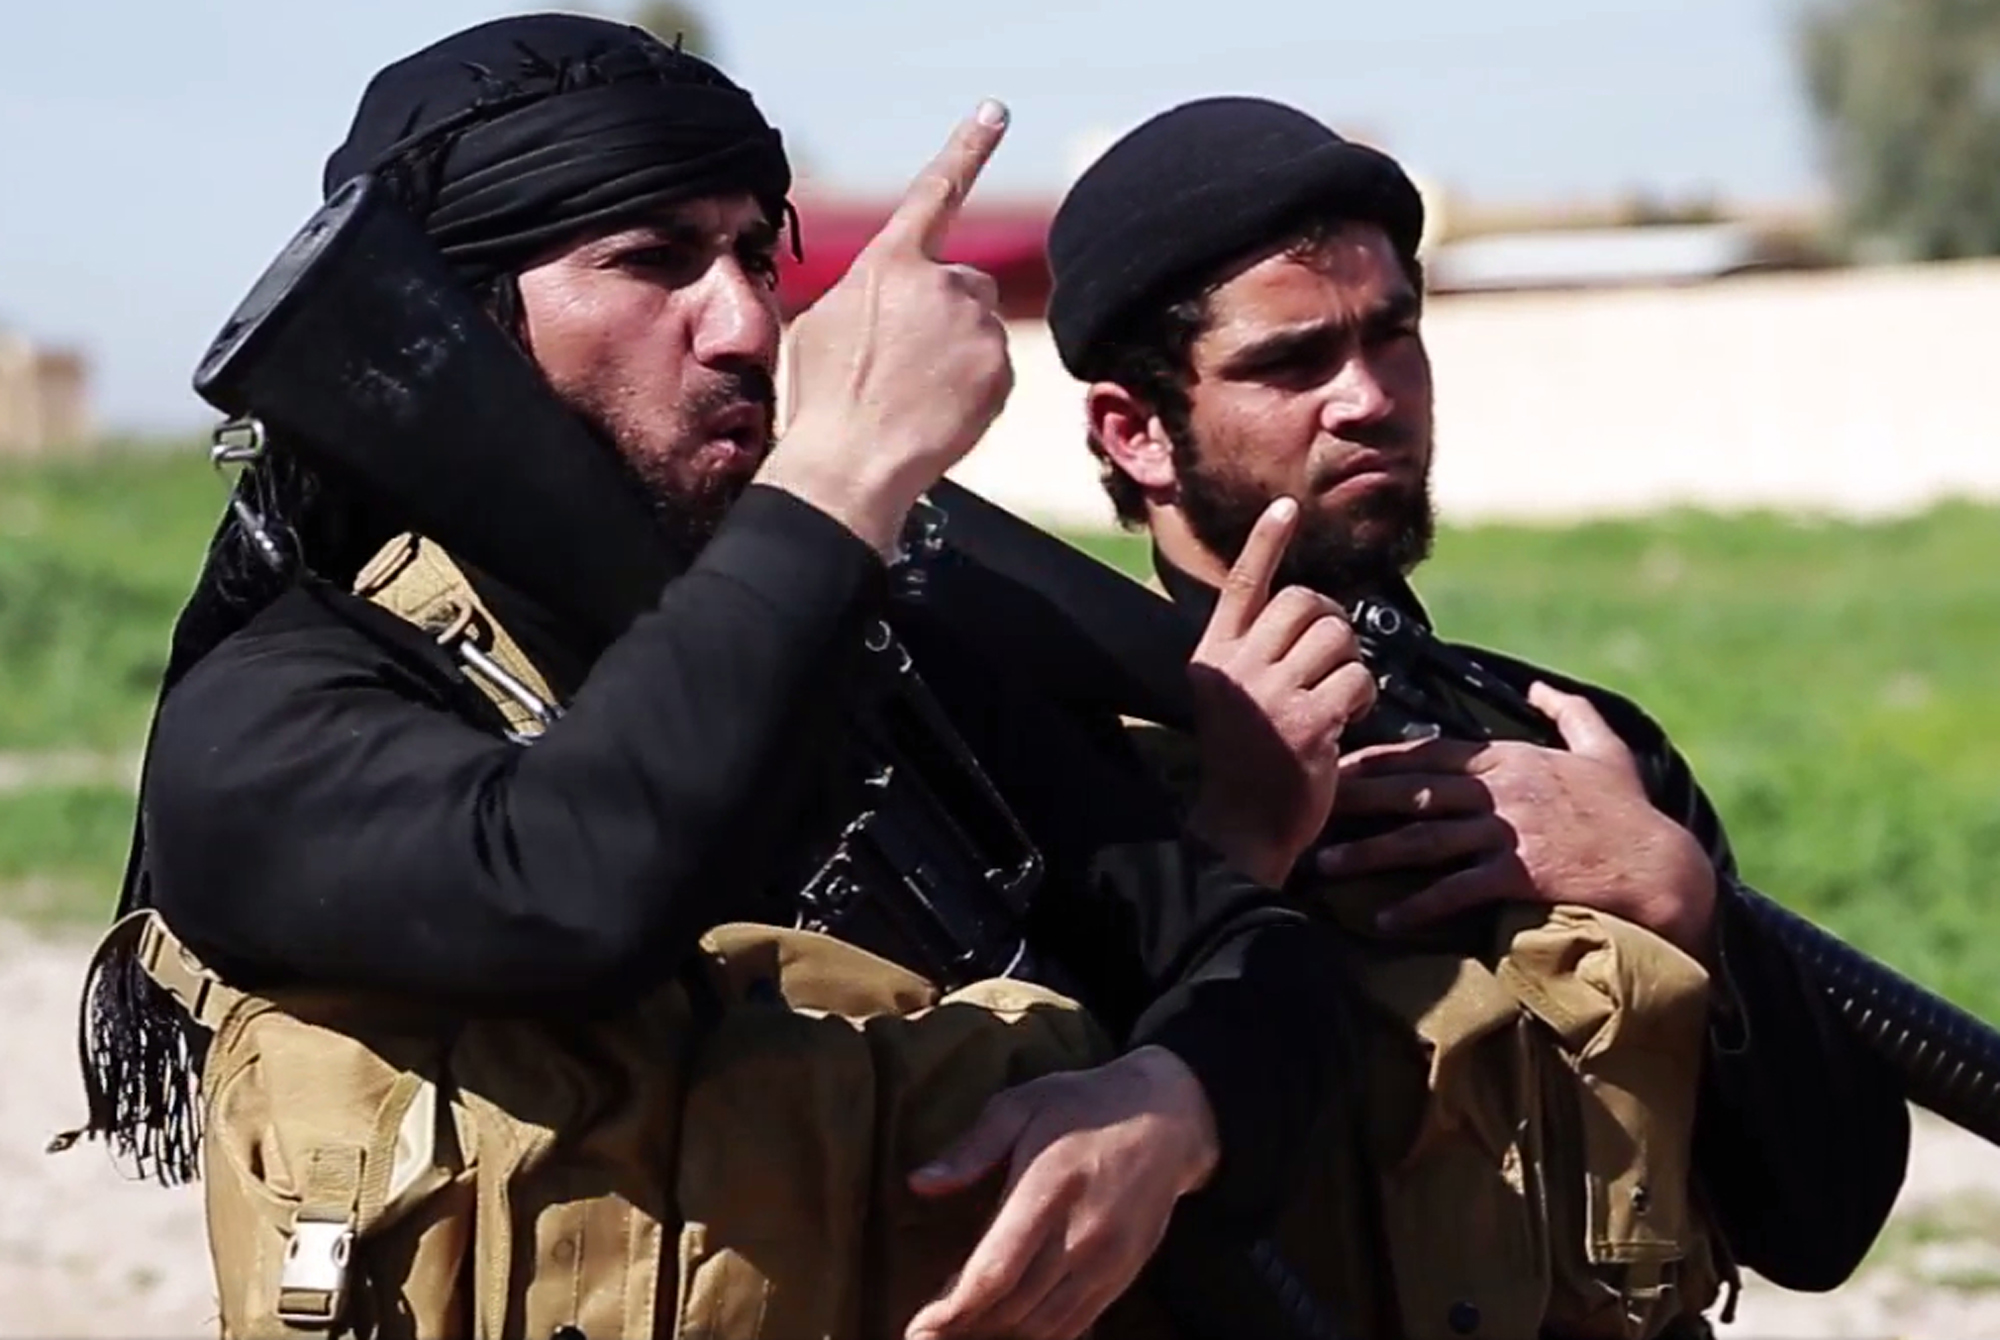 الازمة الاقتصادية من أكبر الاسباب لانضمام الشباب "لداعش" باسم الدين